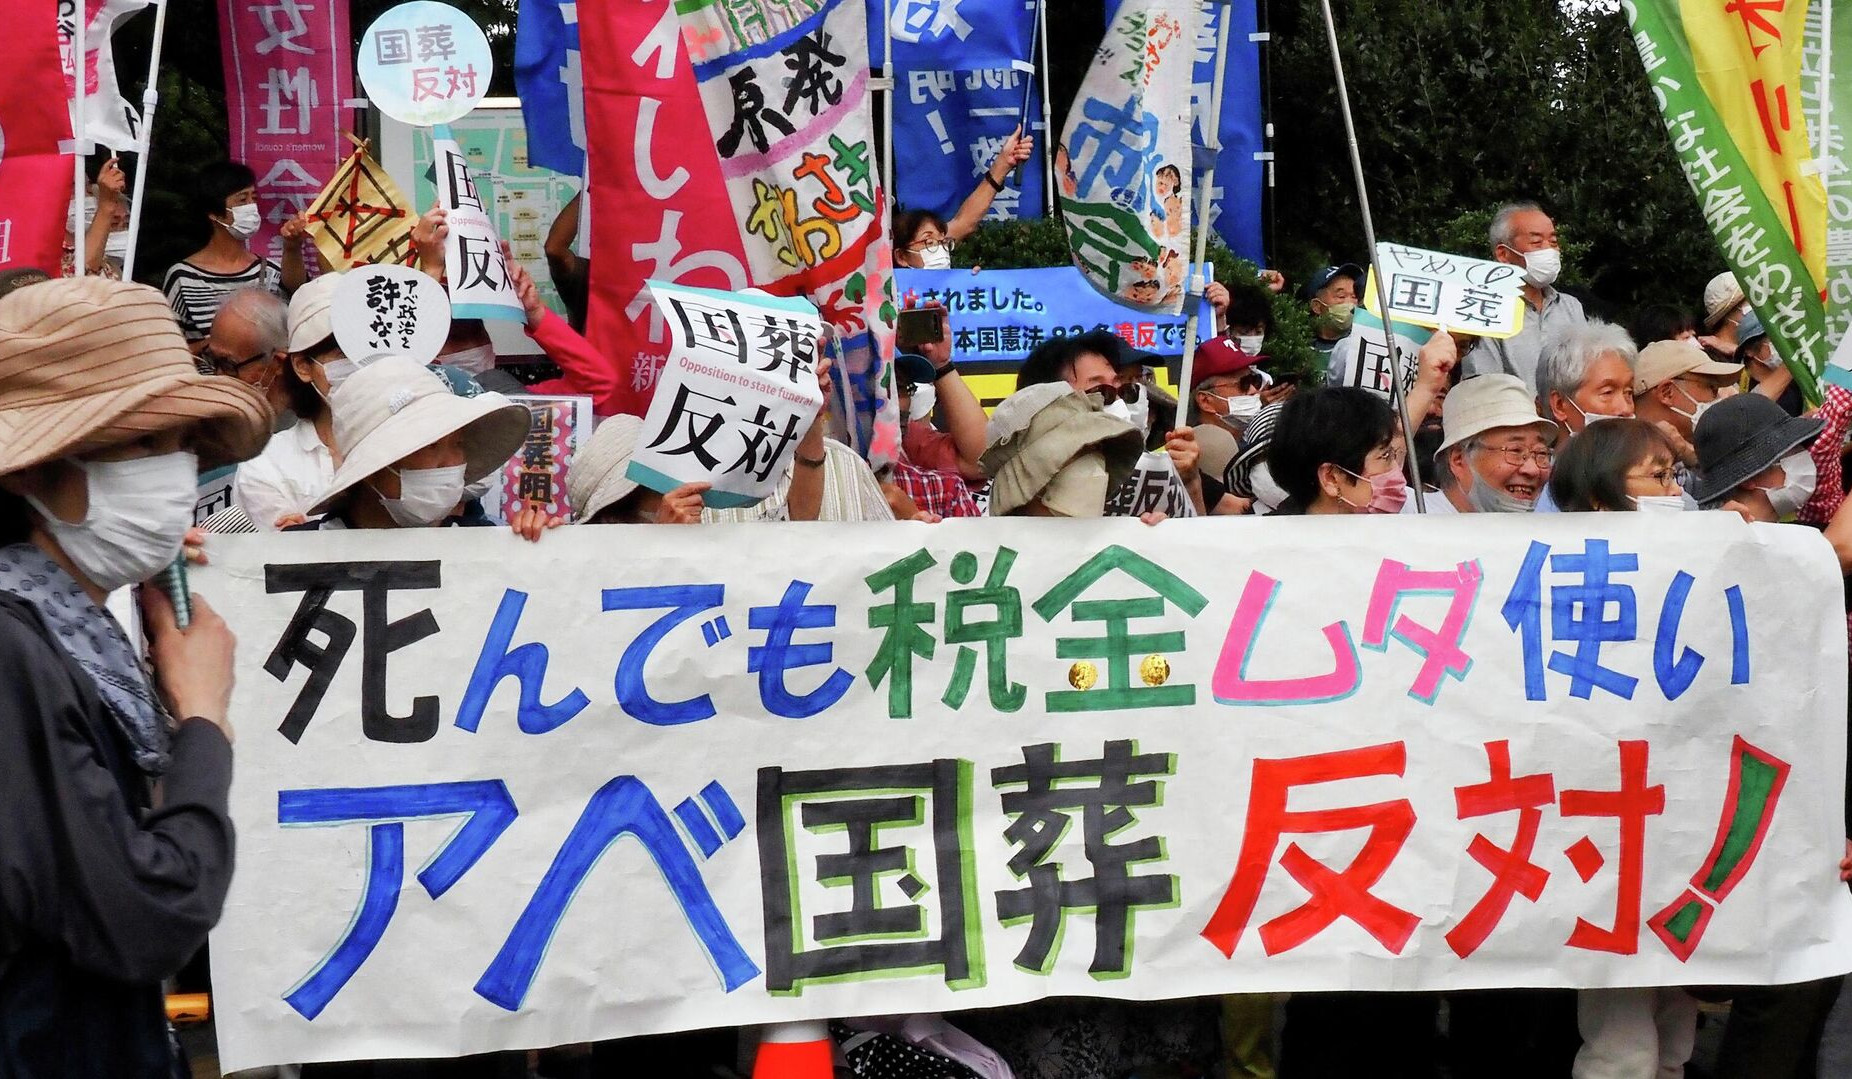 Տոկիոյում Սինձո Աբեի հուղարկավորությունն ուղեկցվել է բողոքի ակցիաներով